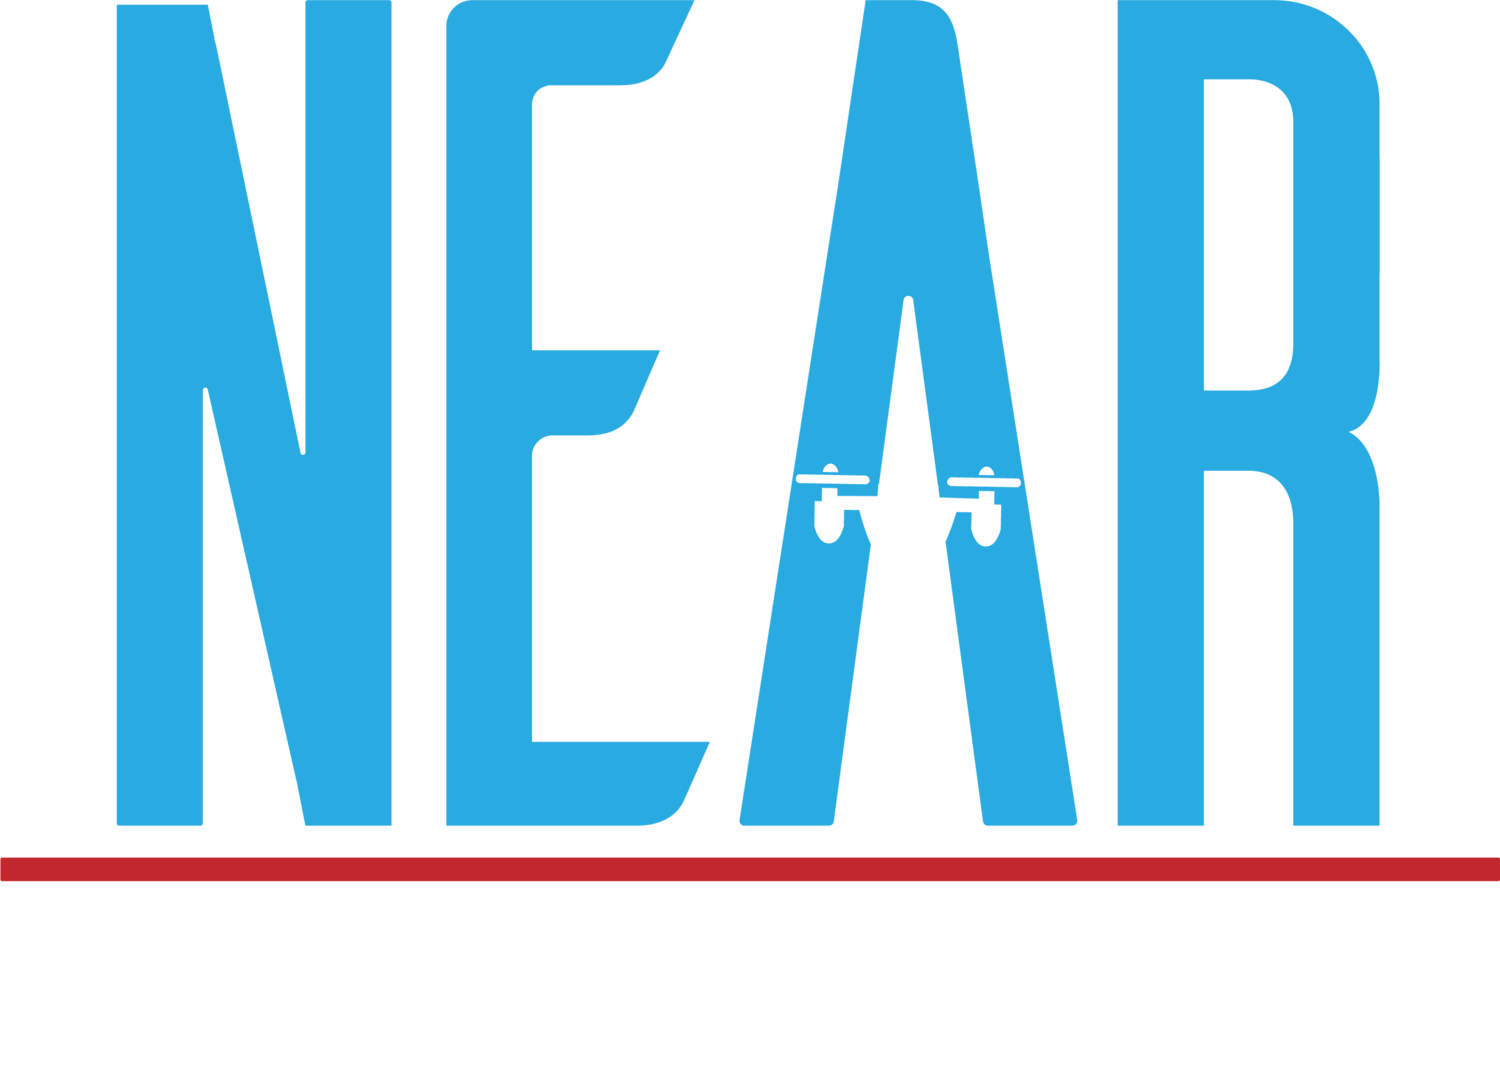 NEAR Photography